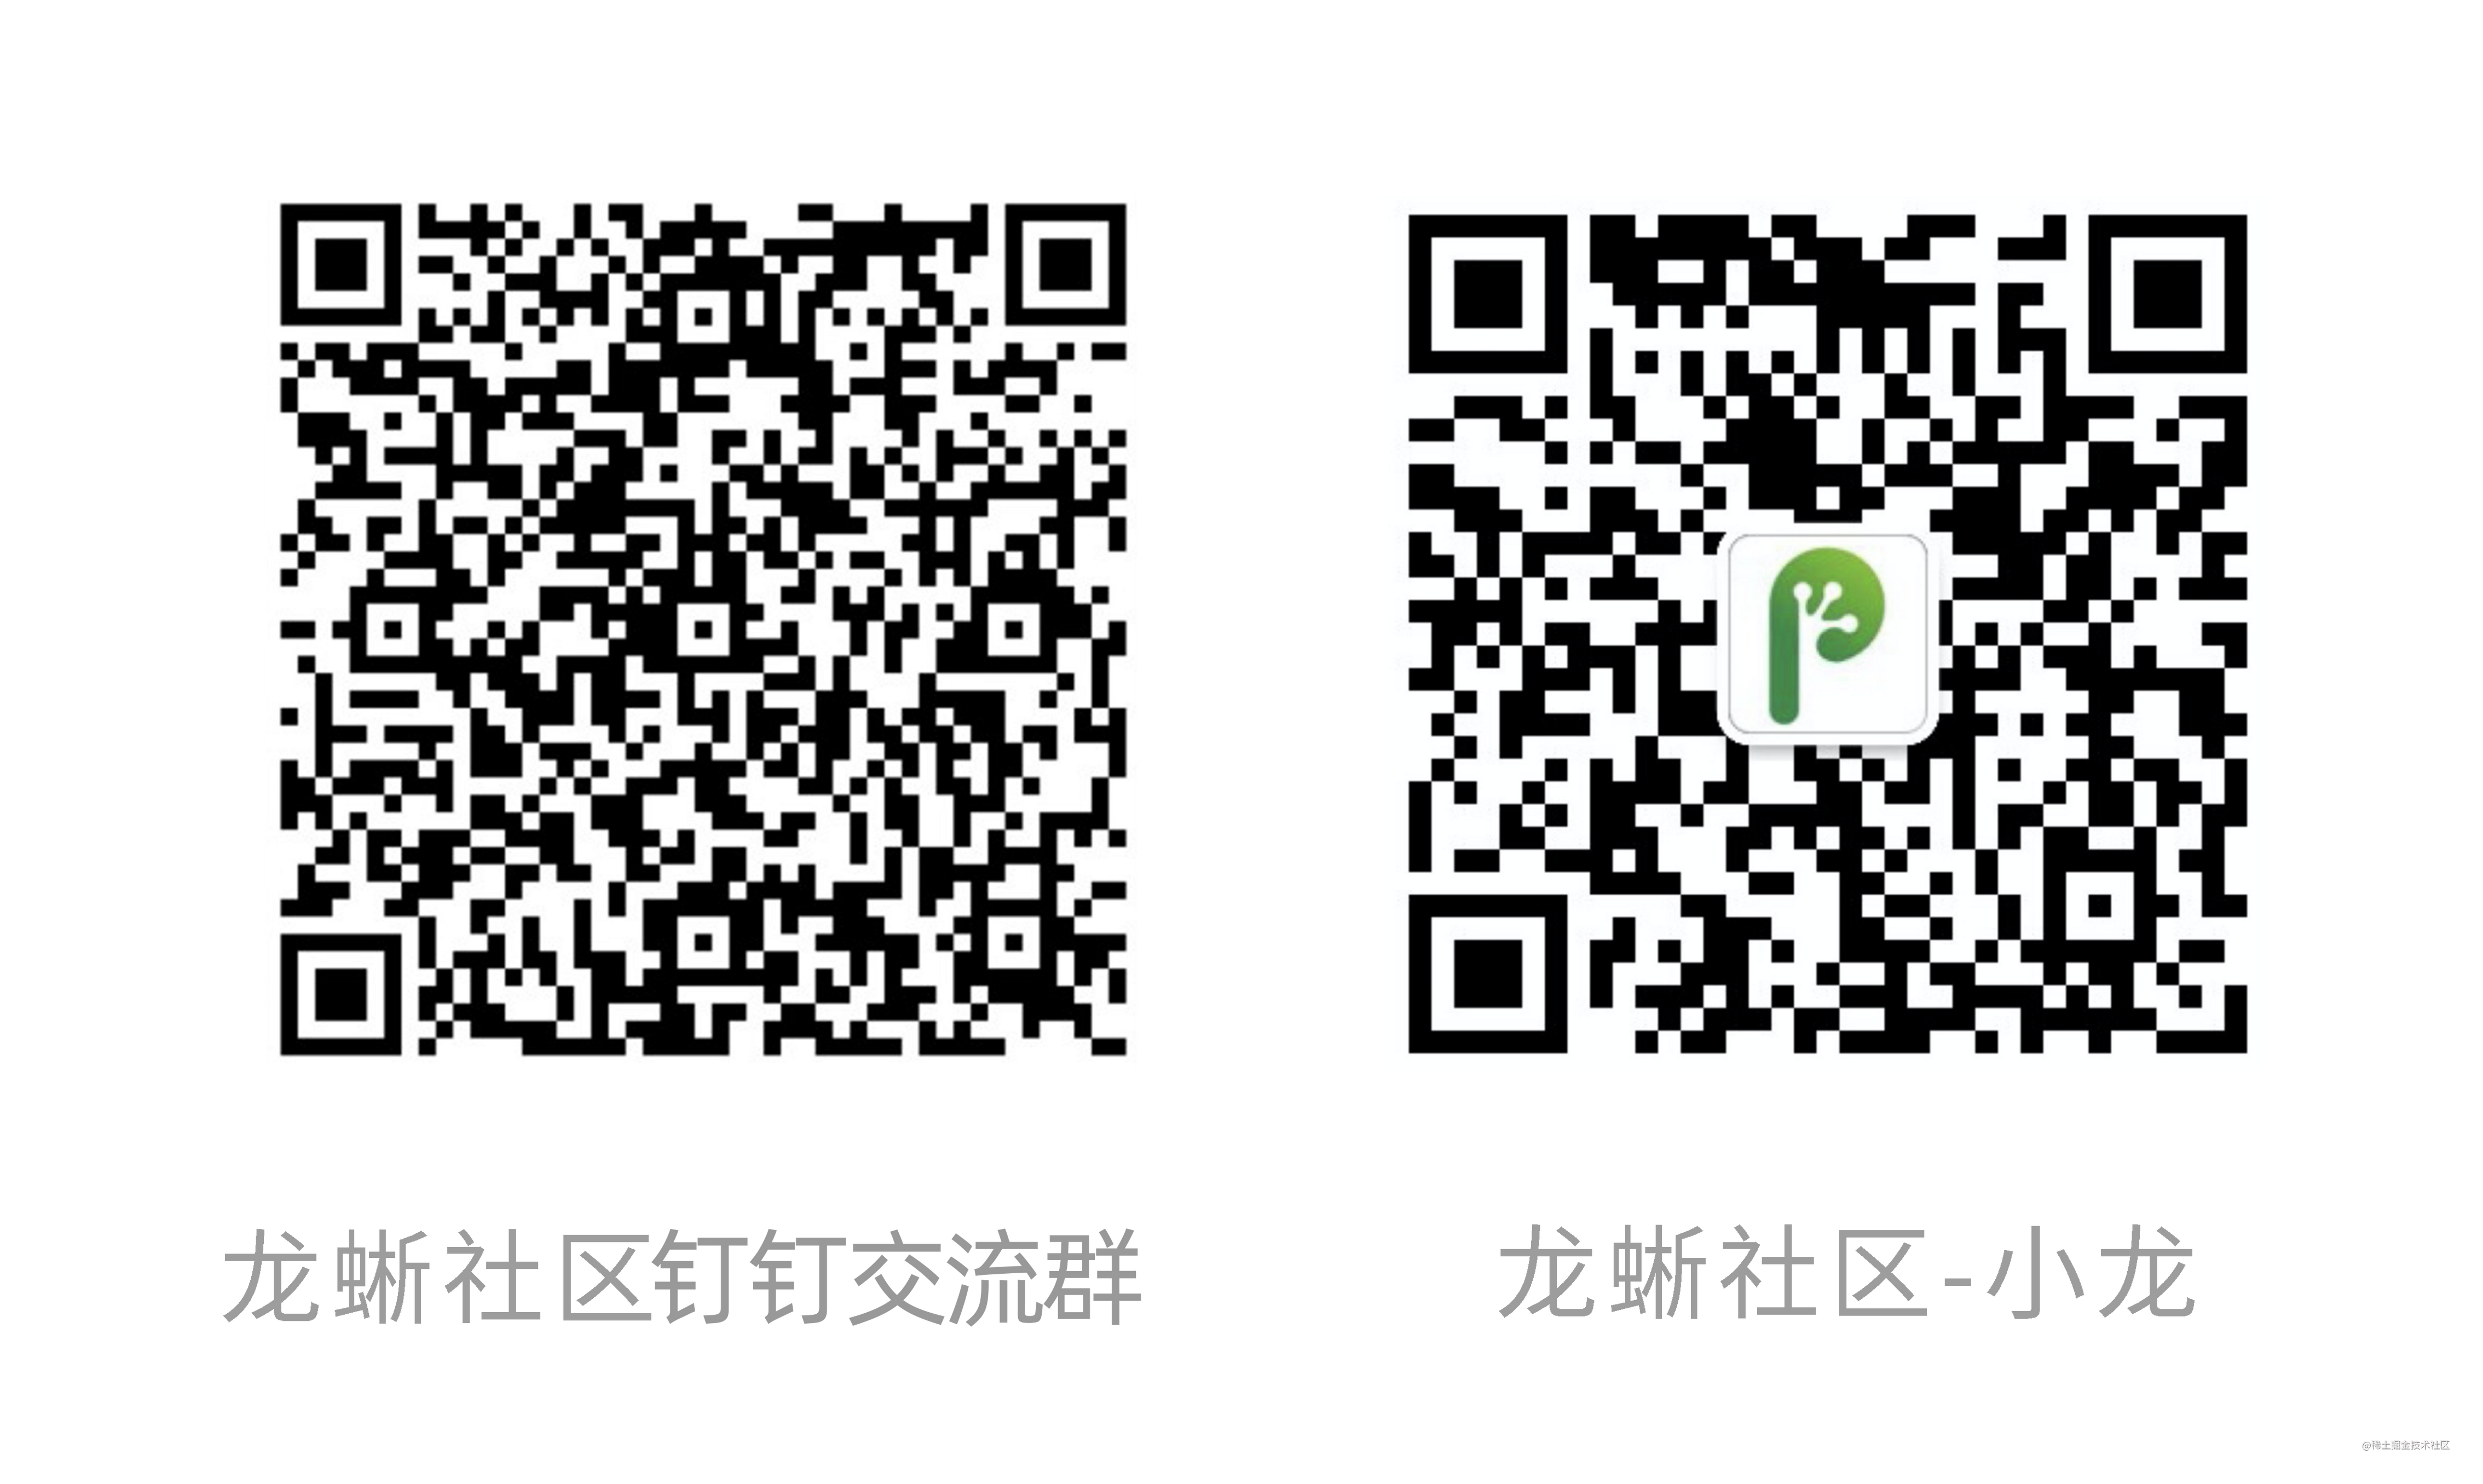 Cuenta oficial y grupo de comunicación Xiaolong.png